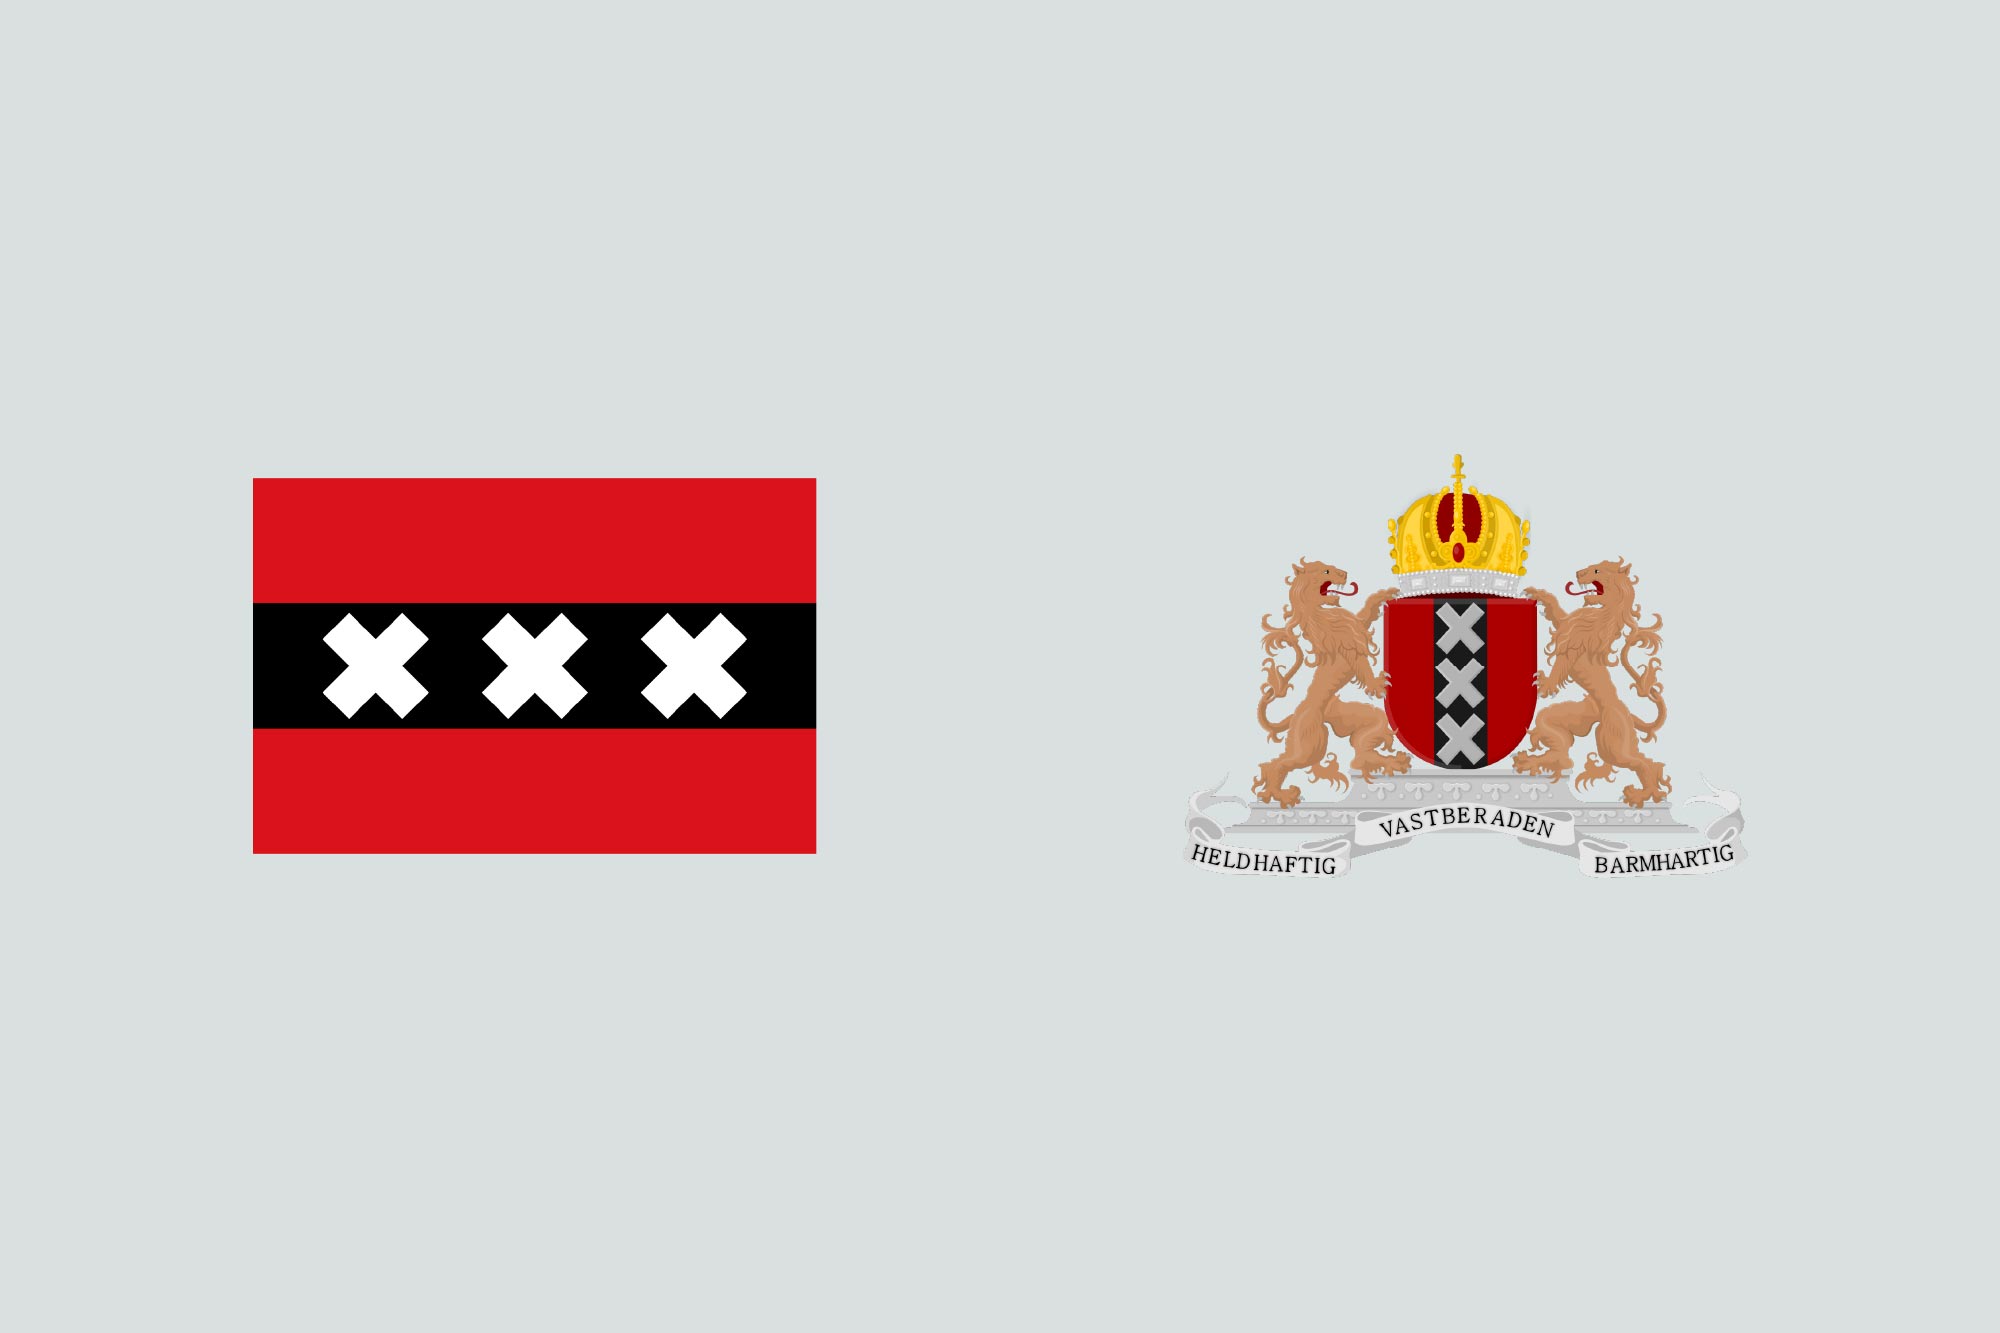 cardiff flag design wales chevron caerdydd amsterdam xxx coat of arms 